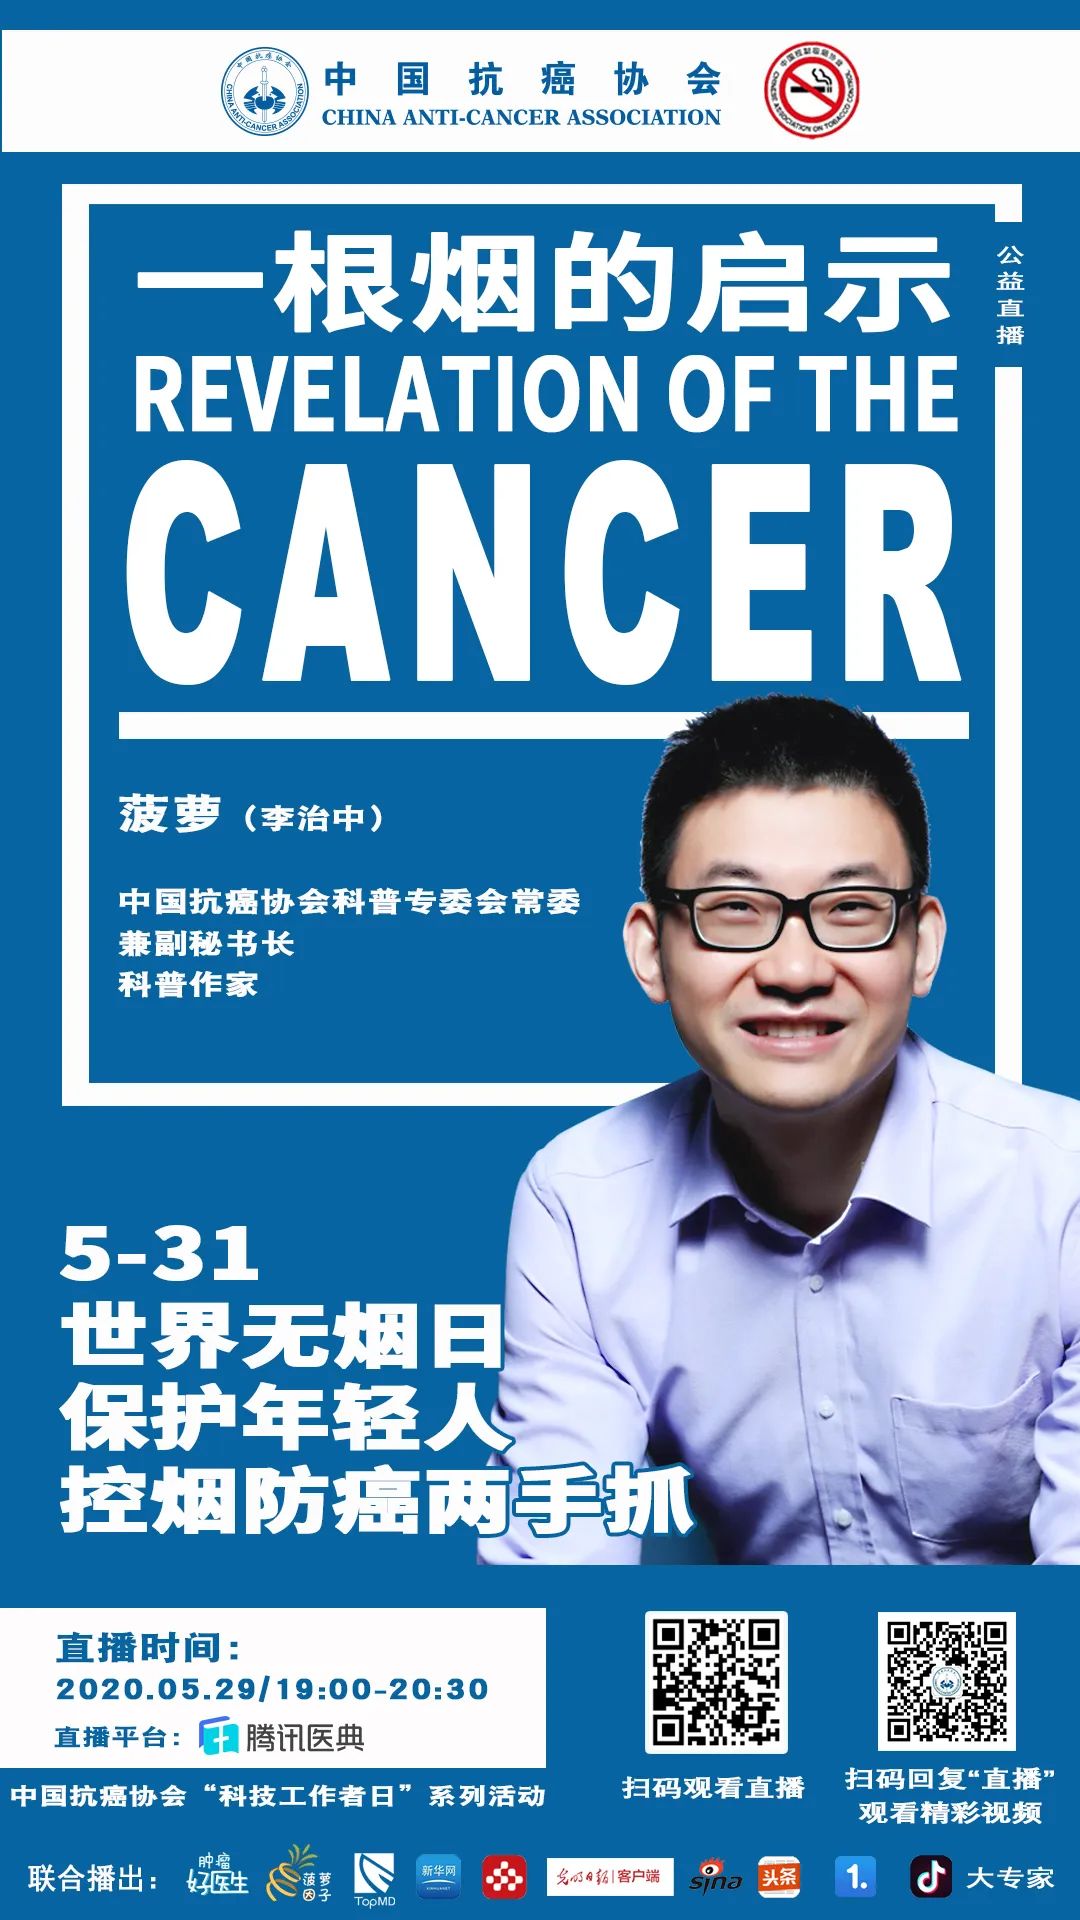 冯提莫得甲状腺癌痊愈 盘点娱乐圈抗癌成功的明星-搜狐大视野-搜狐新闻